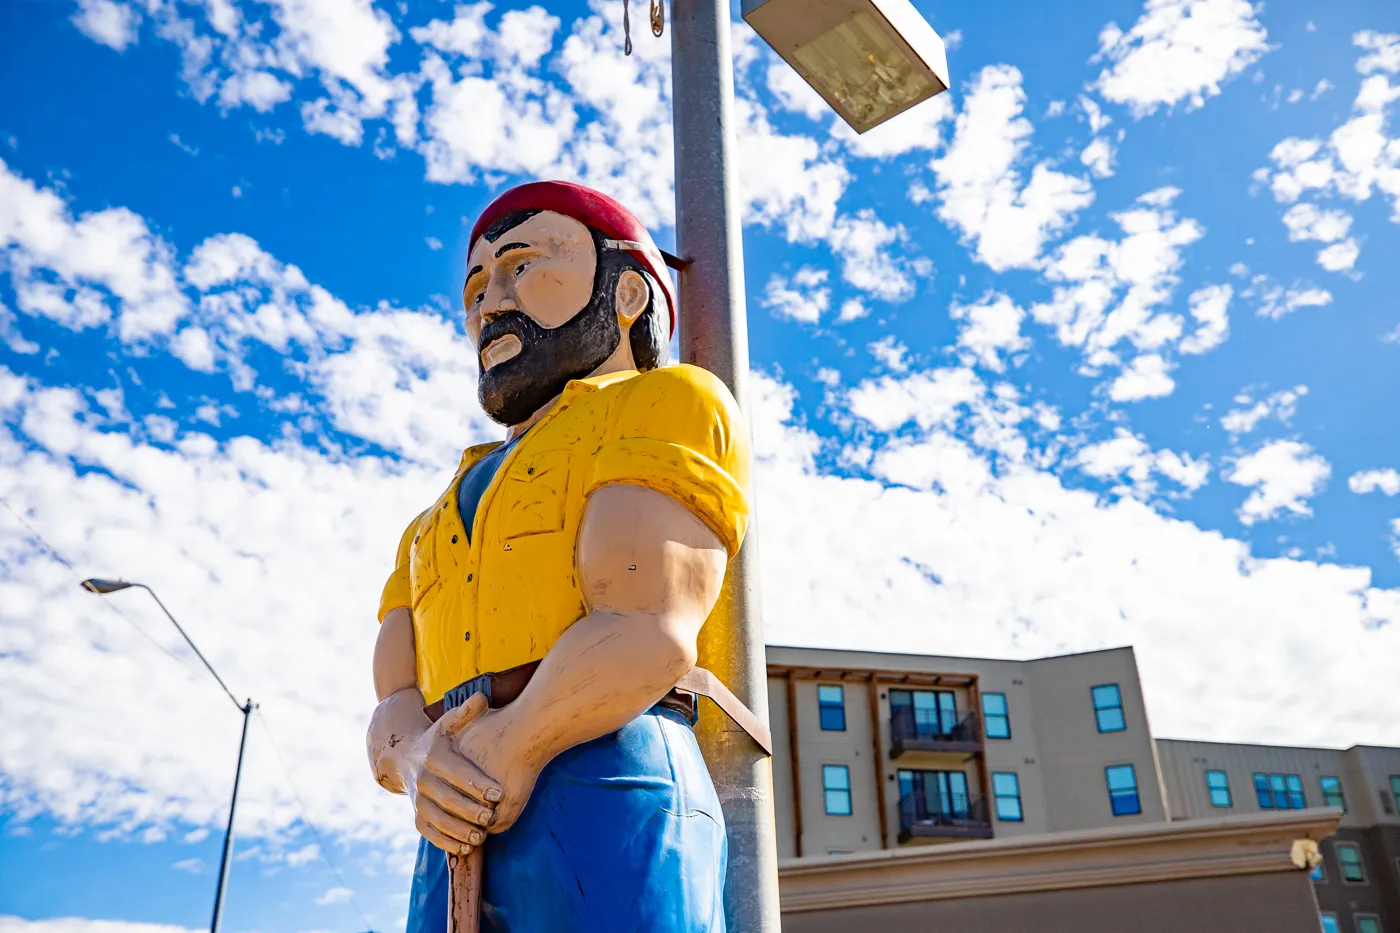 Little Louie in Flagstaff, Arizona (Louie the Lumberjack Statue) Route 66 Roadside Attraction